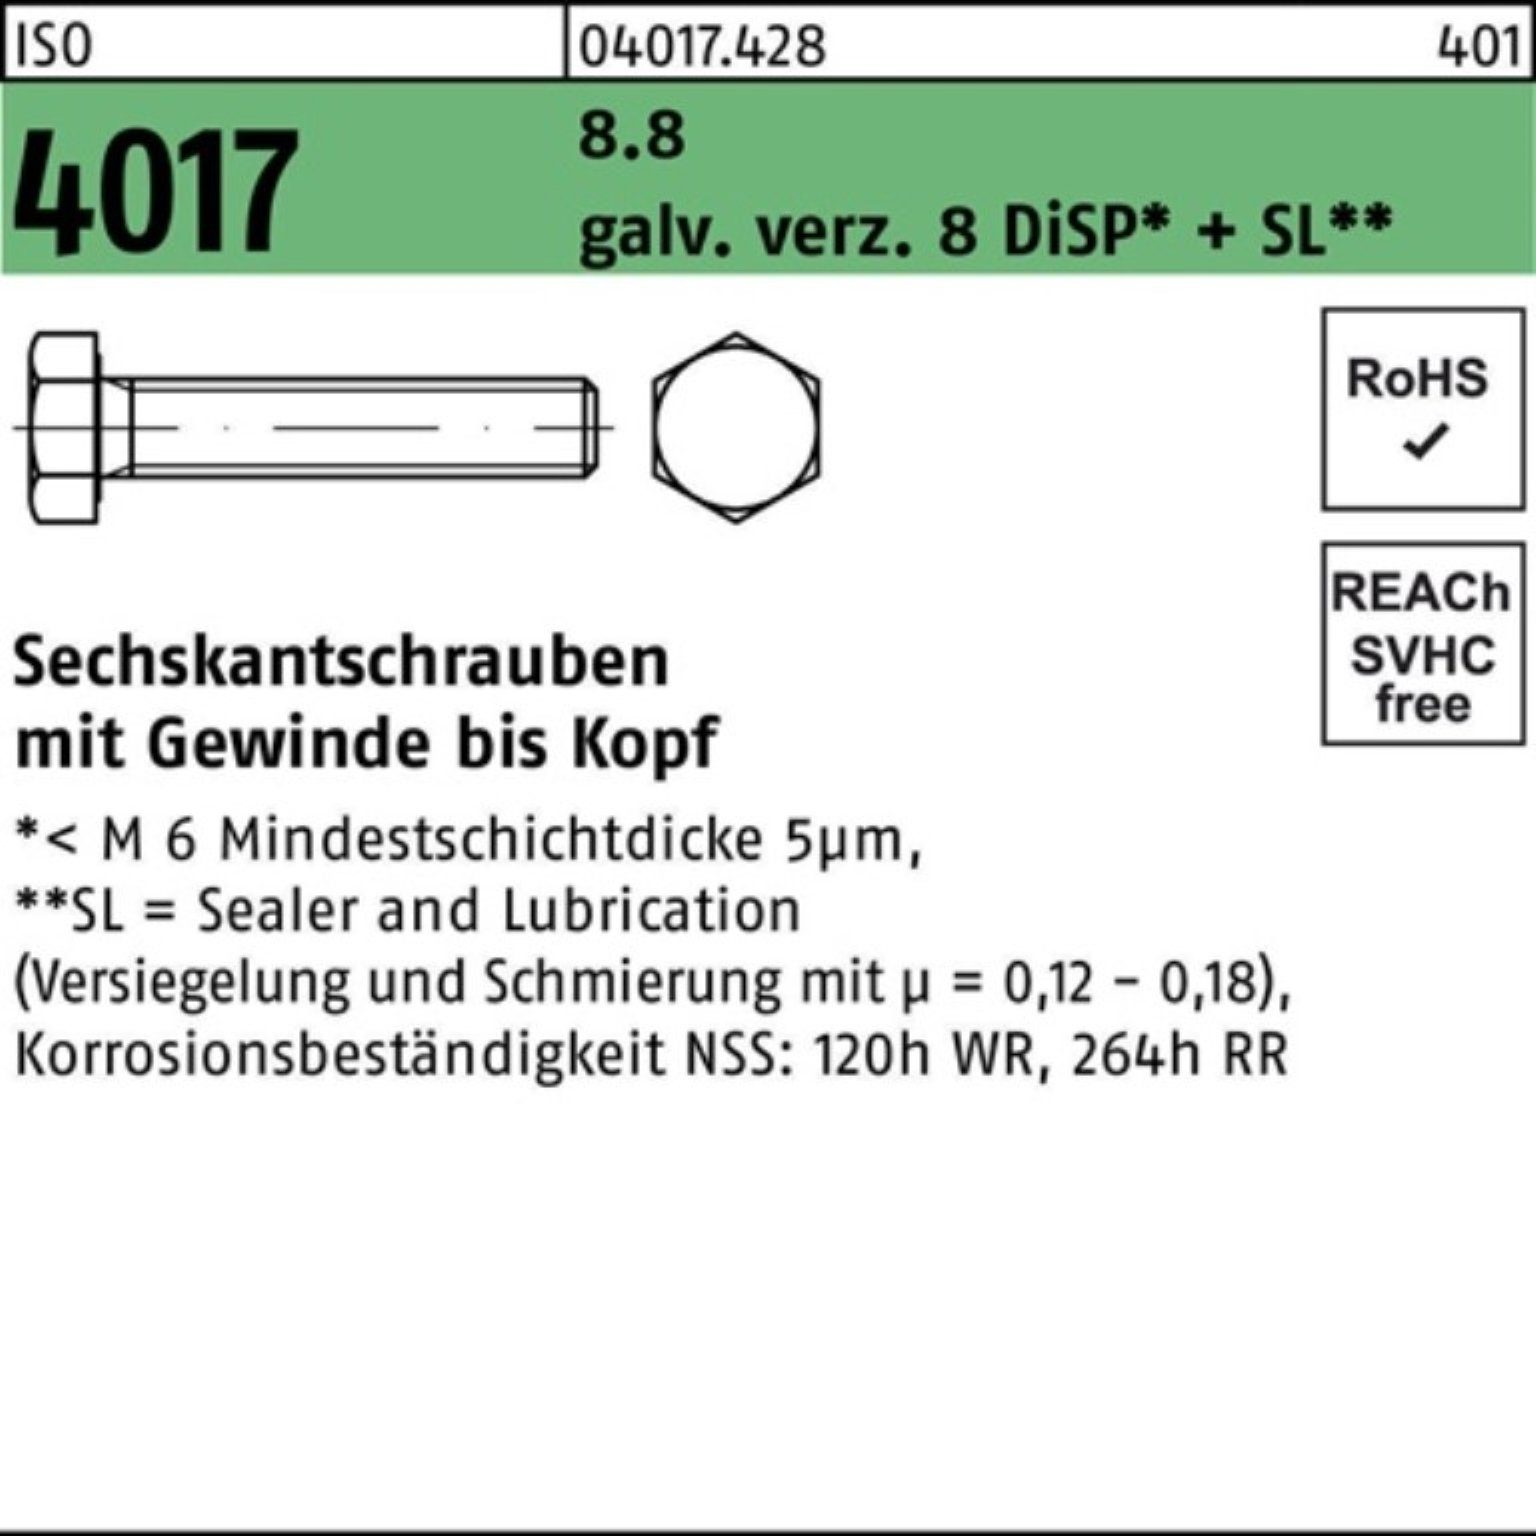 8.8 Sechskantschraube DiSP galv.verz. 8 Sechskantschraube Bufab Pack 40 M14x 100er VG 4017 ISO